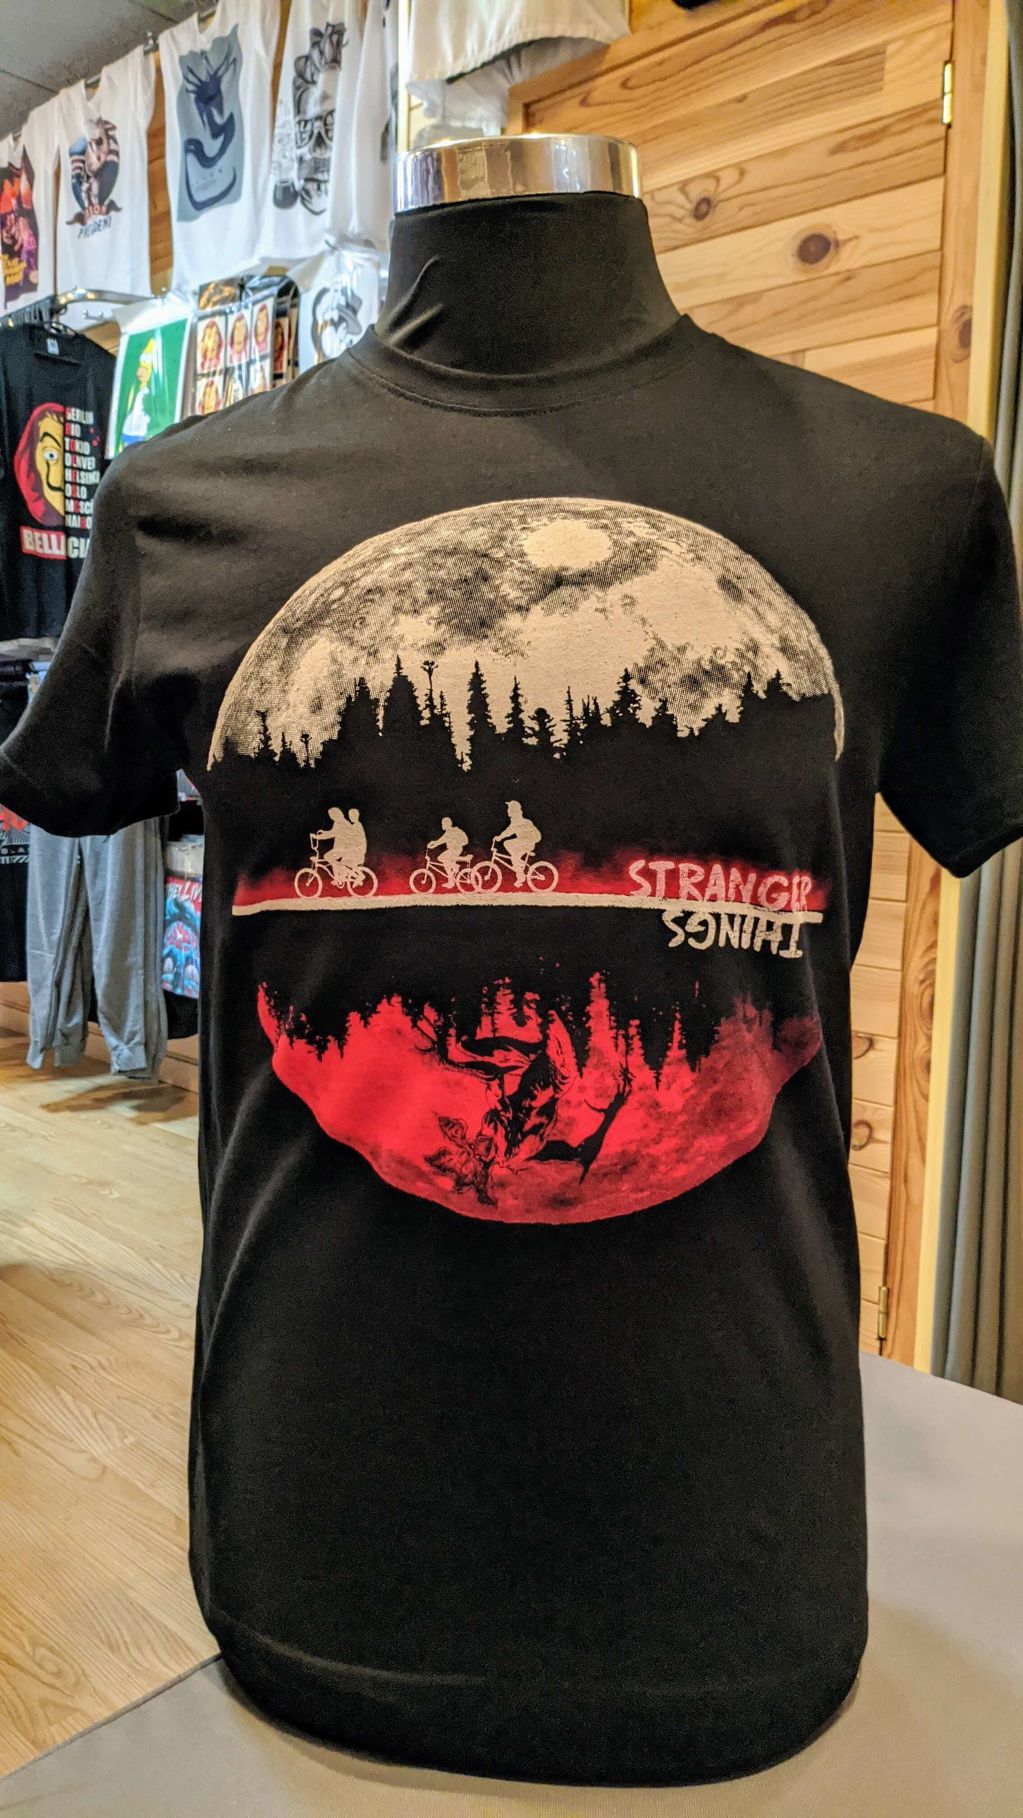 Stranger Things - 483e1-camiseta-stranger-things.jpg